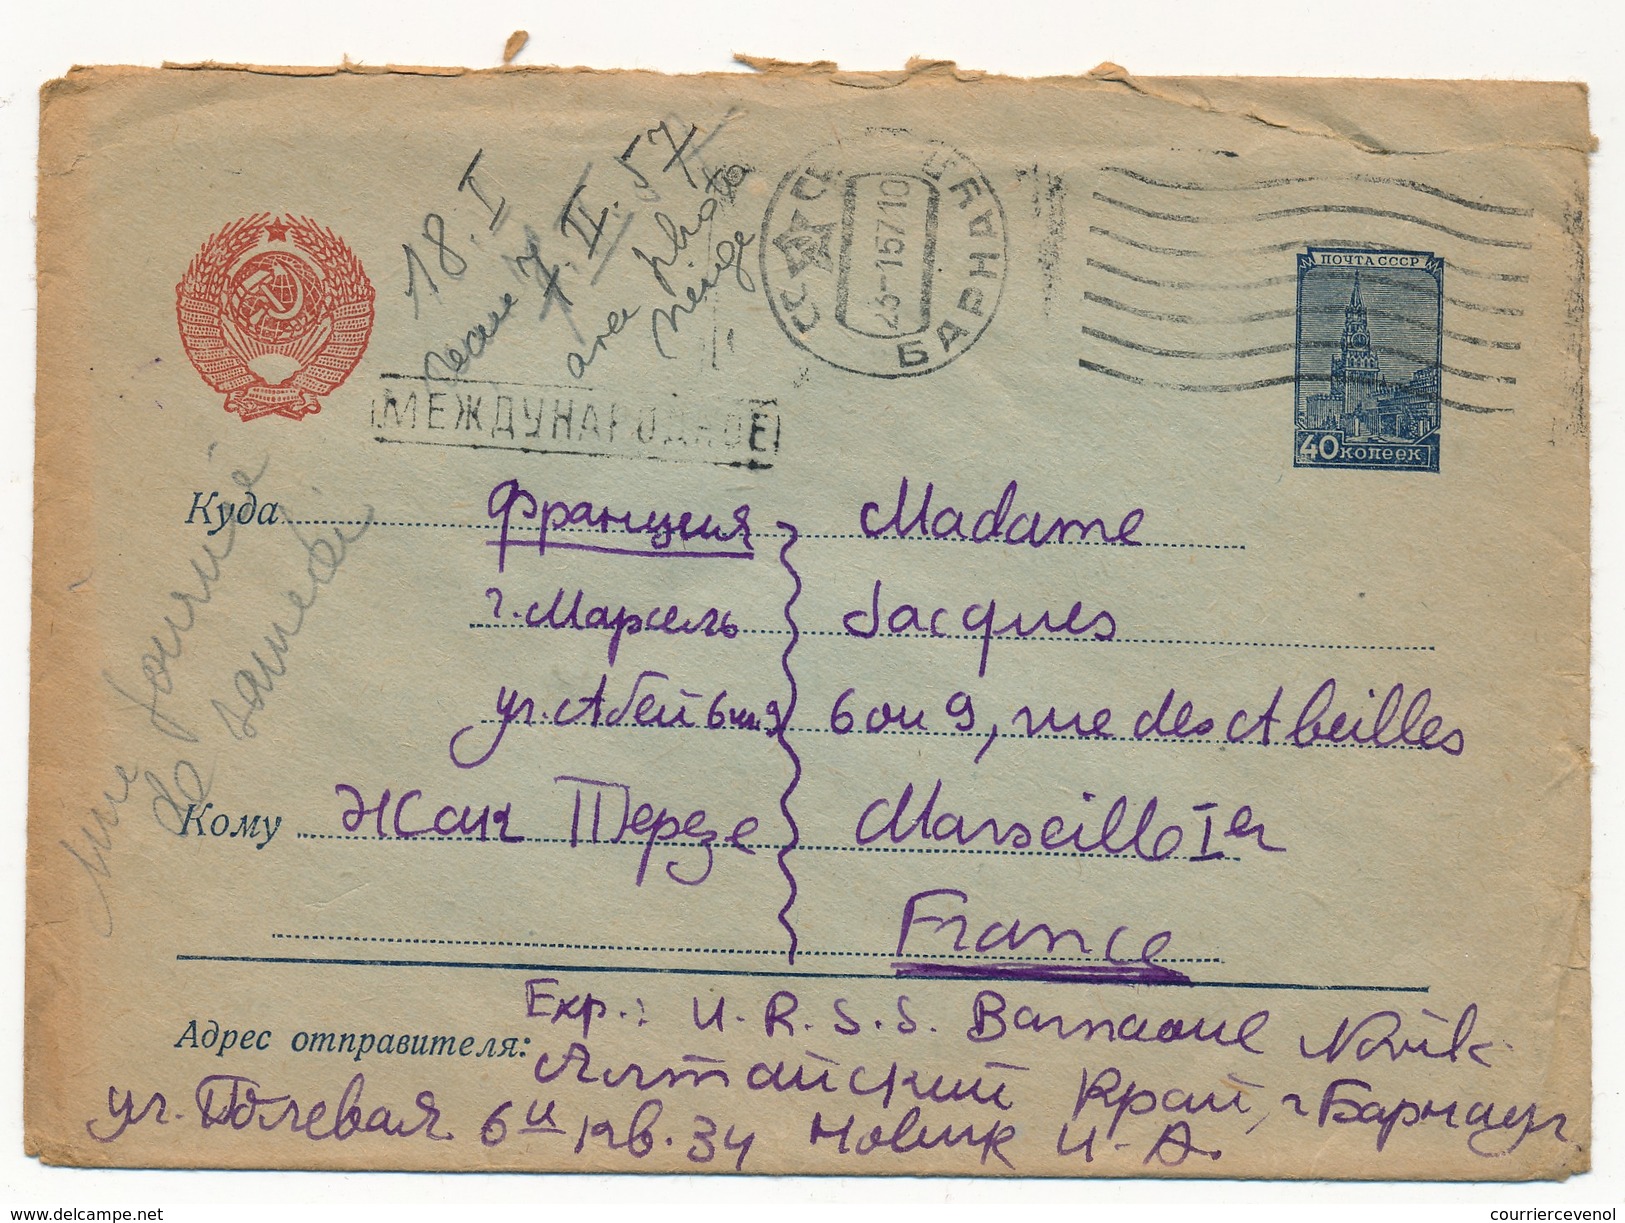 Lot 8 enveloppes diverses - Courrier des années 50 Russie => France